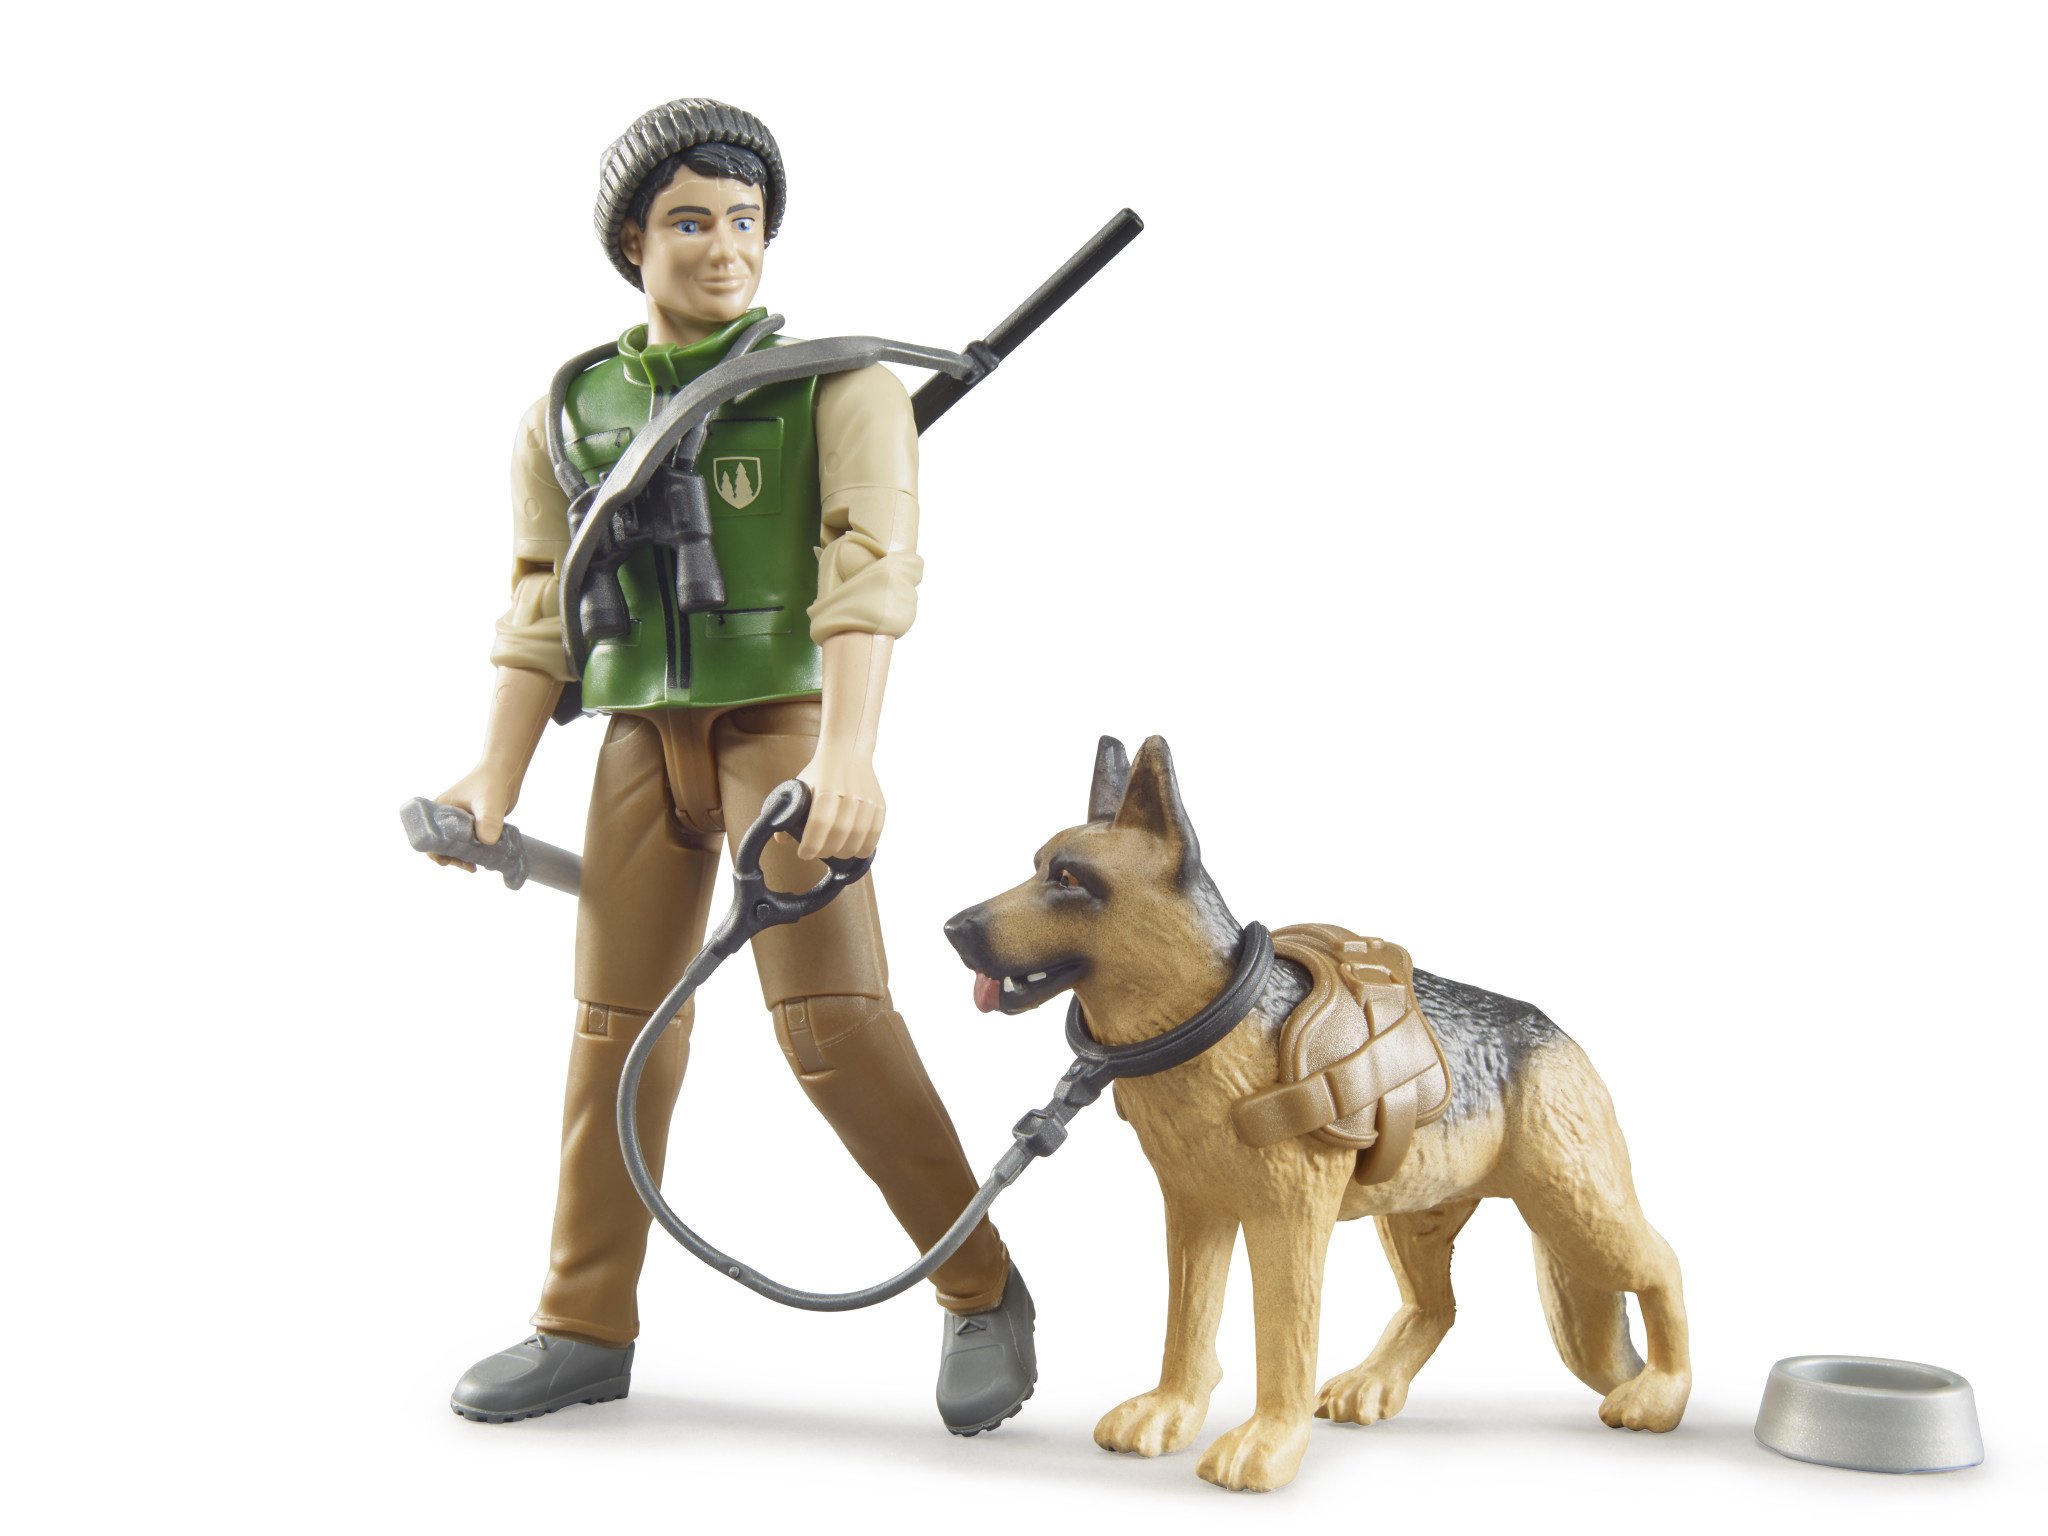 Bruder Bruder 62660 - Garde forestier avec chien et équipement